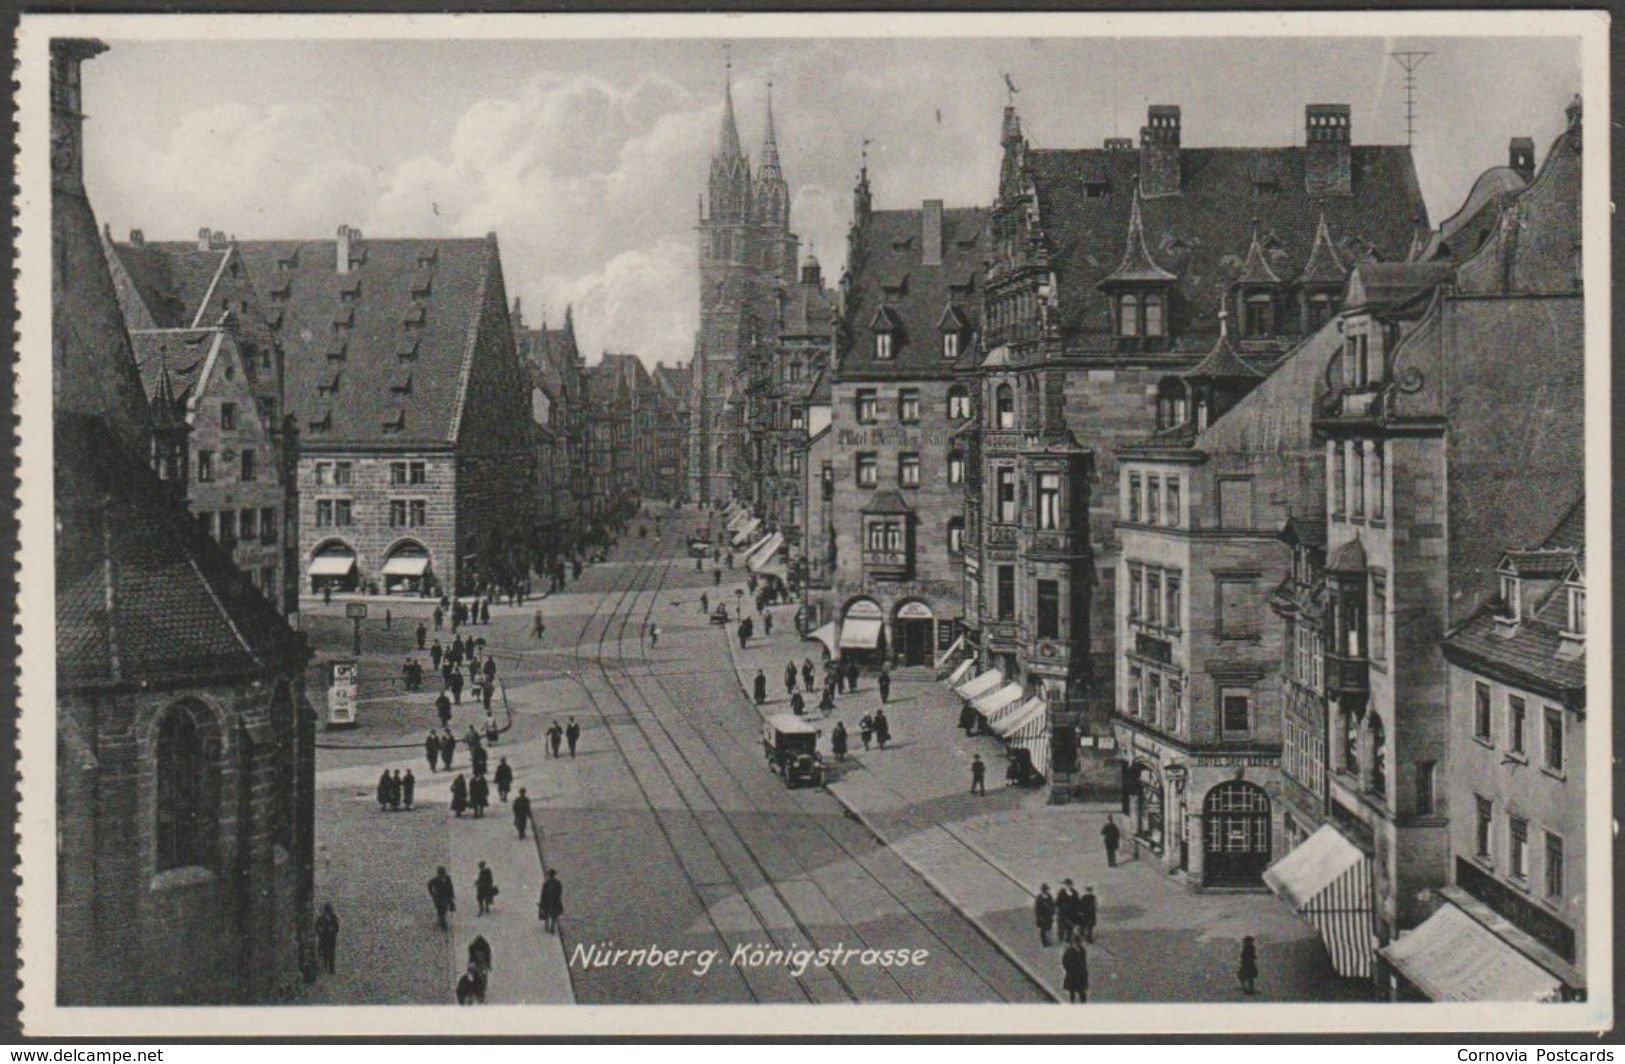 Nuernberg - Königstrasse, Nürnberg, c.1930s - Ludwig Riffelmacher AK